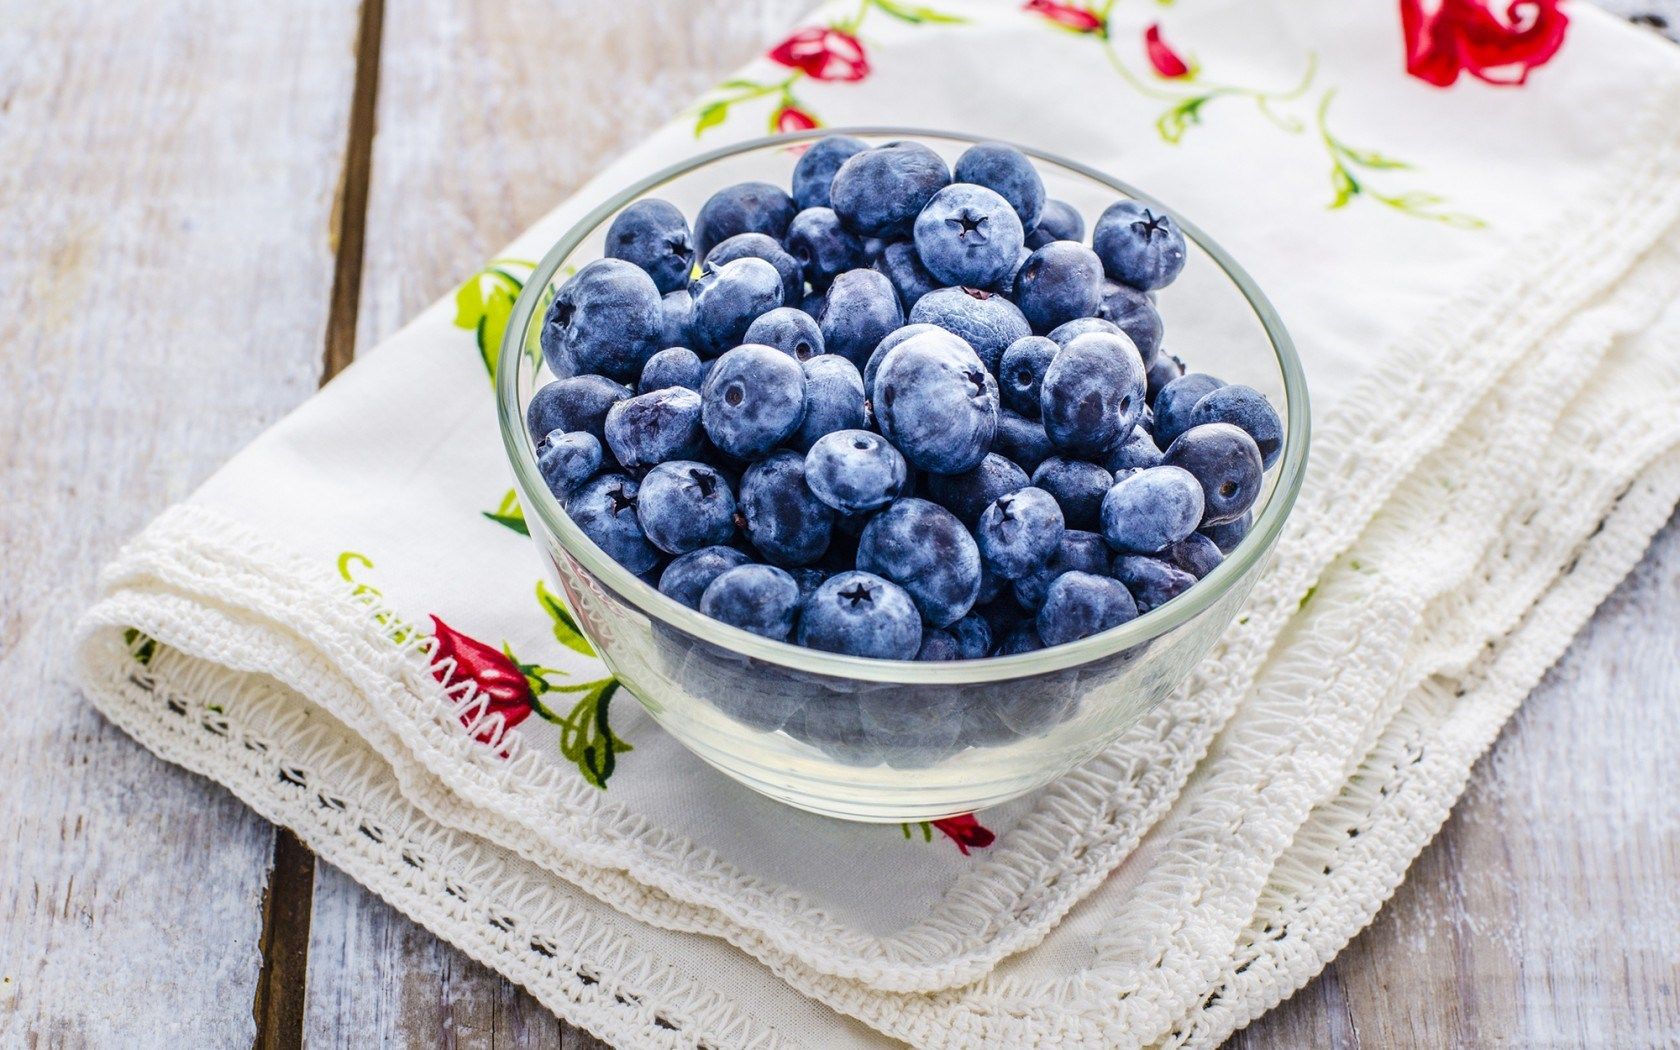 HD wallpaper, Table, Berries, Blueberries